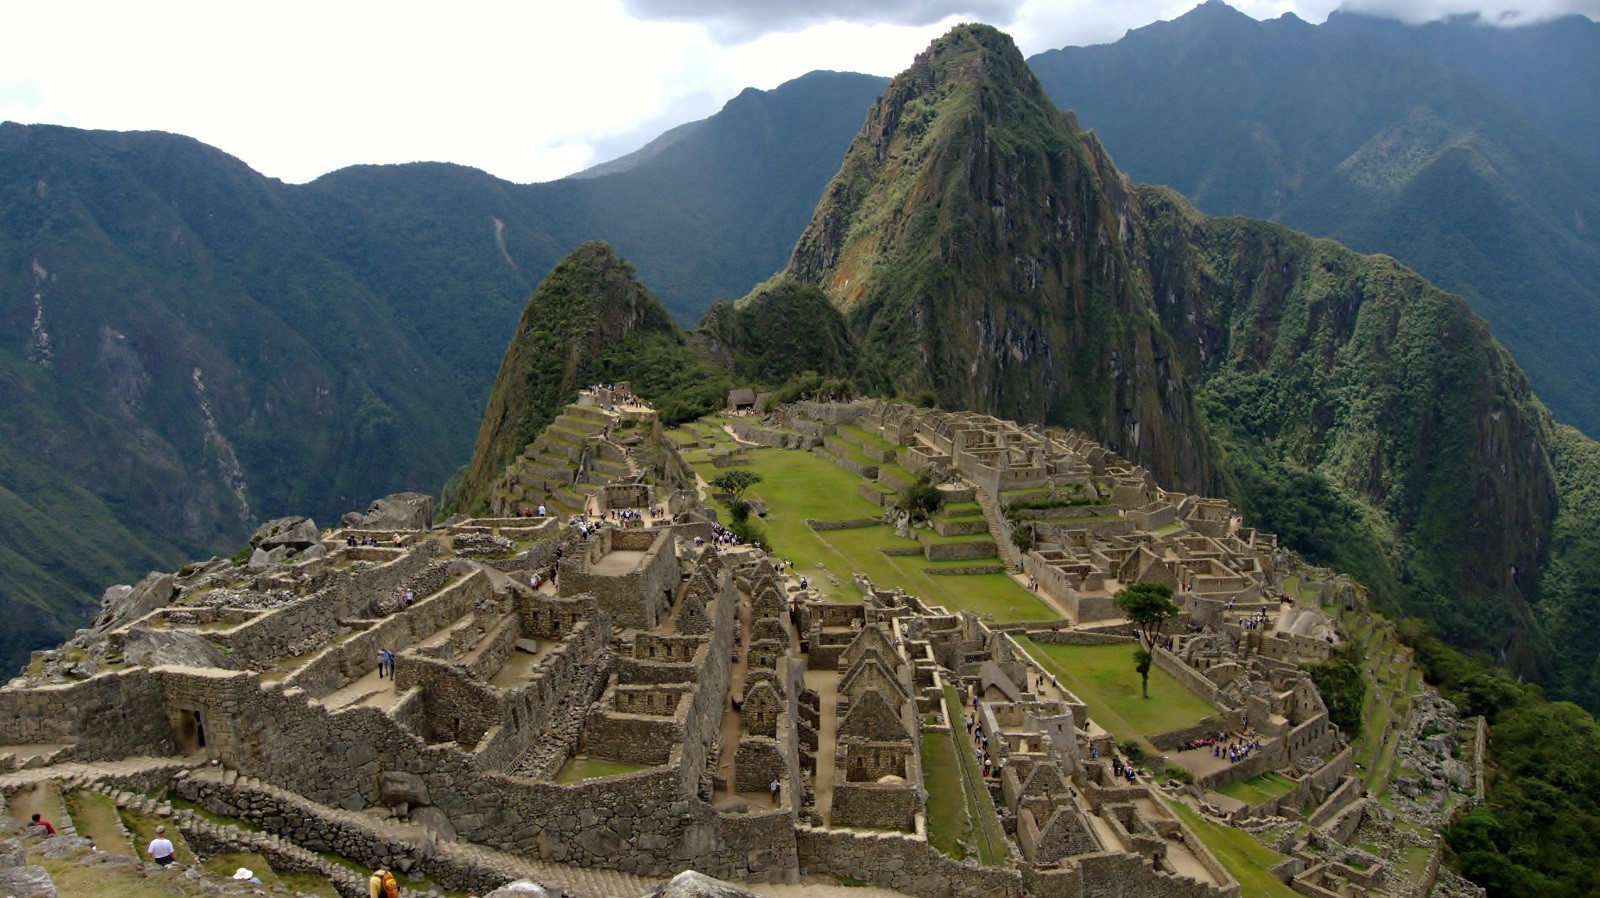 Nowe znalezisko pokazuje, jak świetnie zorganizowani byli Inkowie. Później doszło do rzezi